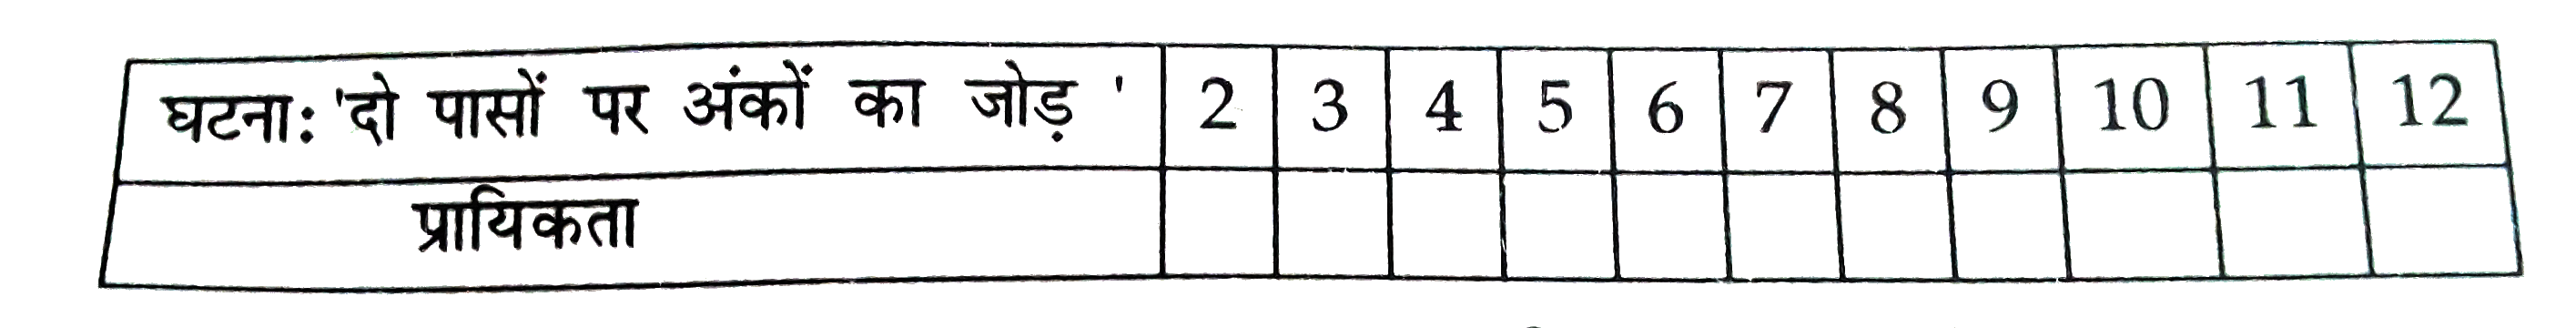 एक नीले तथा दूसरा सलेटी रंग के दो पासों को एक साथ फेंका जाता है। निम्नलिखित तालिका को पूरा कीजिएः      ऊपर दी गयी तालिका से एक विद्यार्थी बहस करता है कि 11 संभव परिणाम 2,3, 4,5, 6, 7, 8, 9, 10, 11 तथा 12 हैं। अत: इनमें से प्रत्येक की प्रायिकता (1)/(11) हैं क्या आप इस कथन से सहमत हैं?